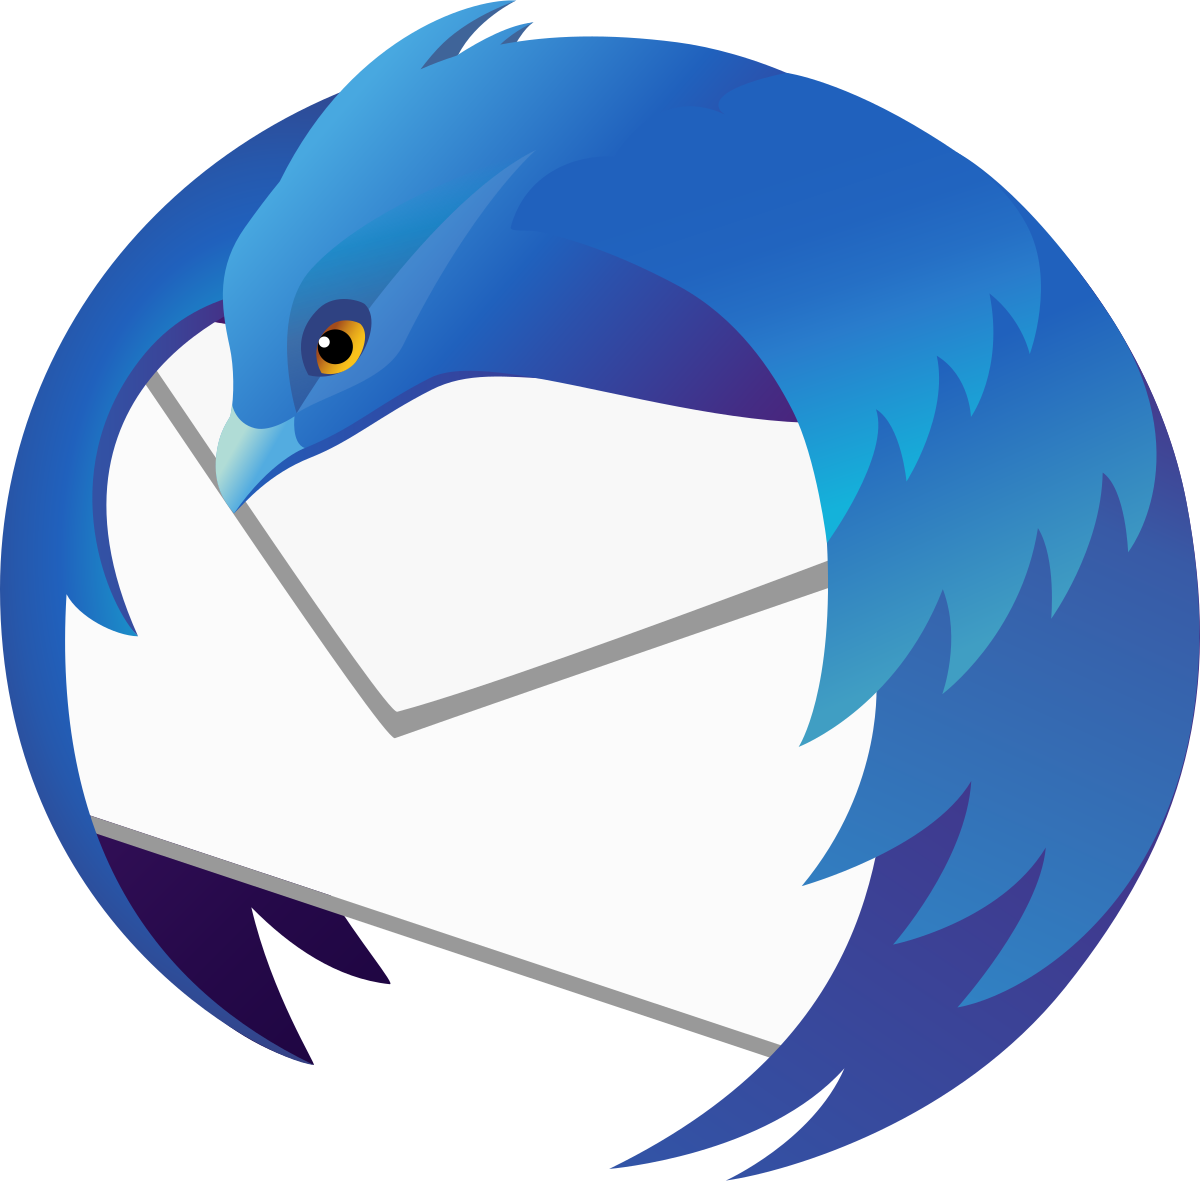 Mozilla Thunderbird программа для с эл. почты [2019] Скачать⬇